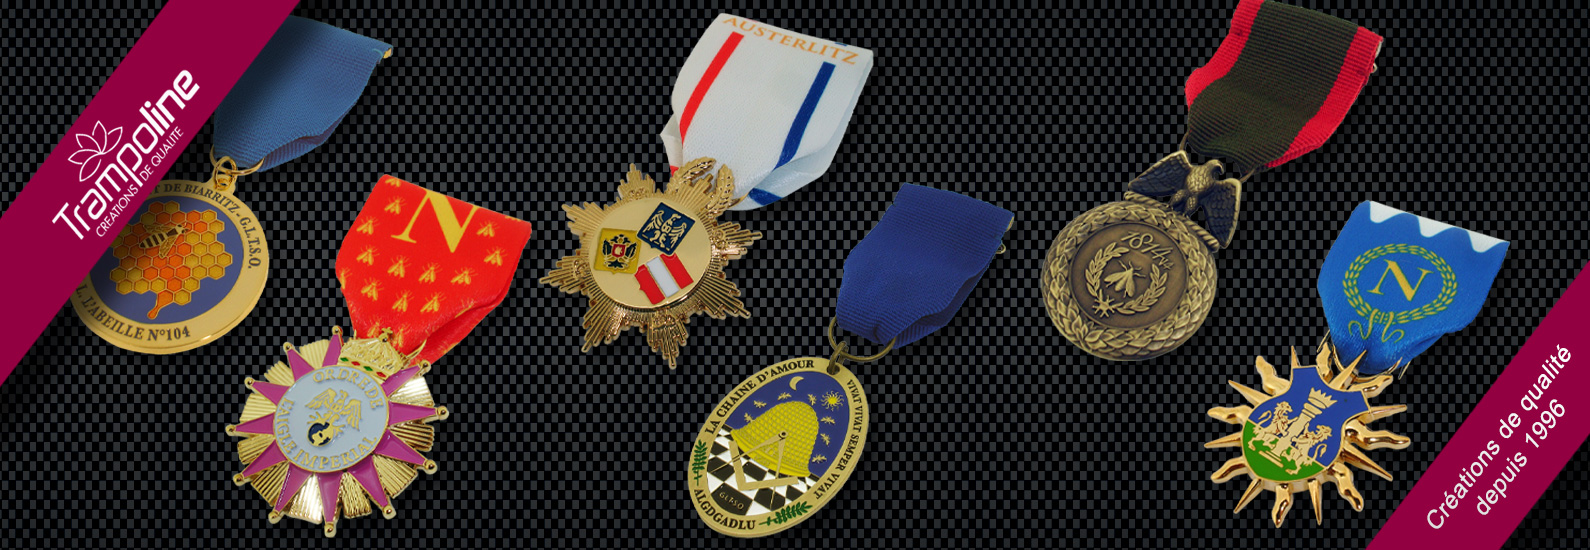 2 fabrication medaille militaire d'honneur epingle sur mesure ruban loge ma%c3%a7onnique francs ma%c3%a7ons ma%c3%a7onnerie